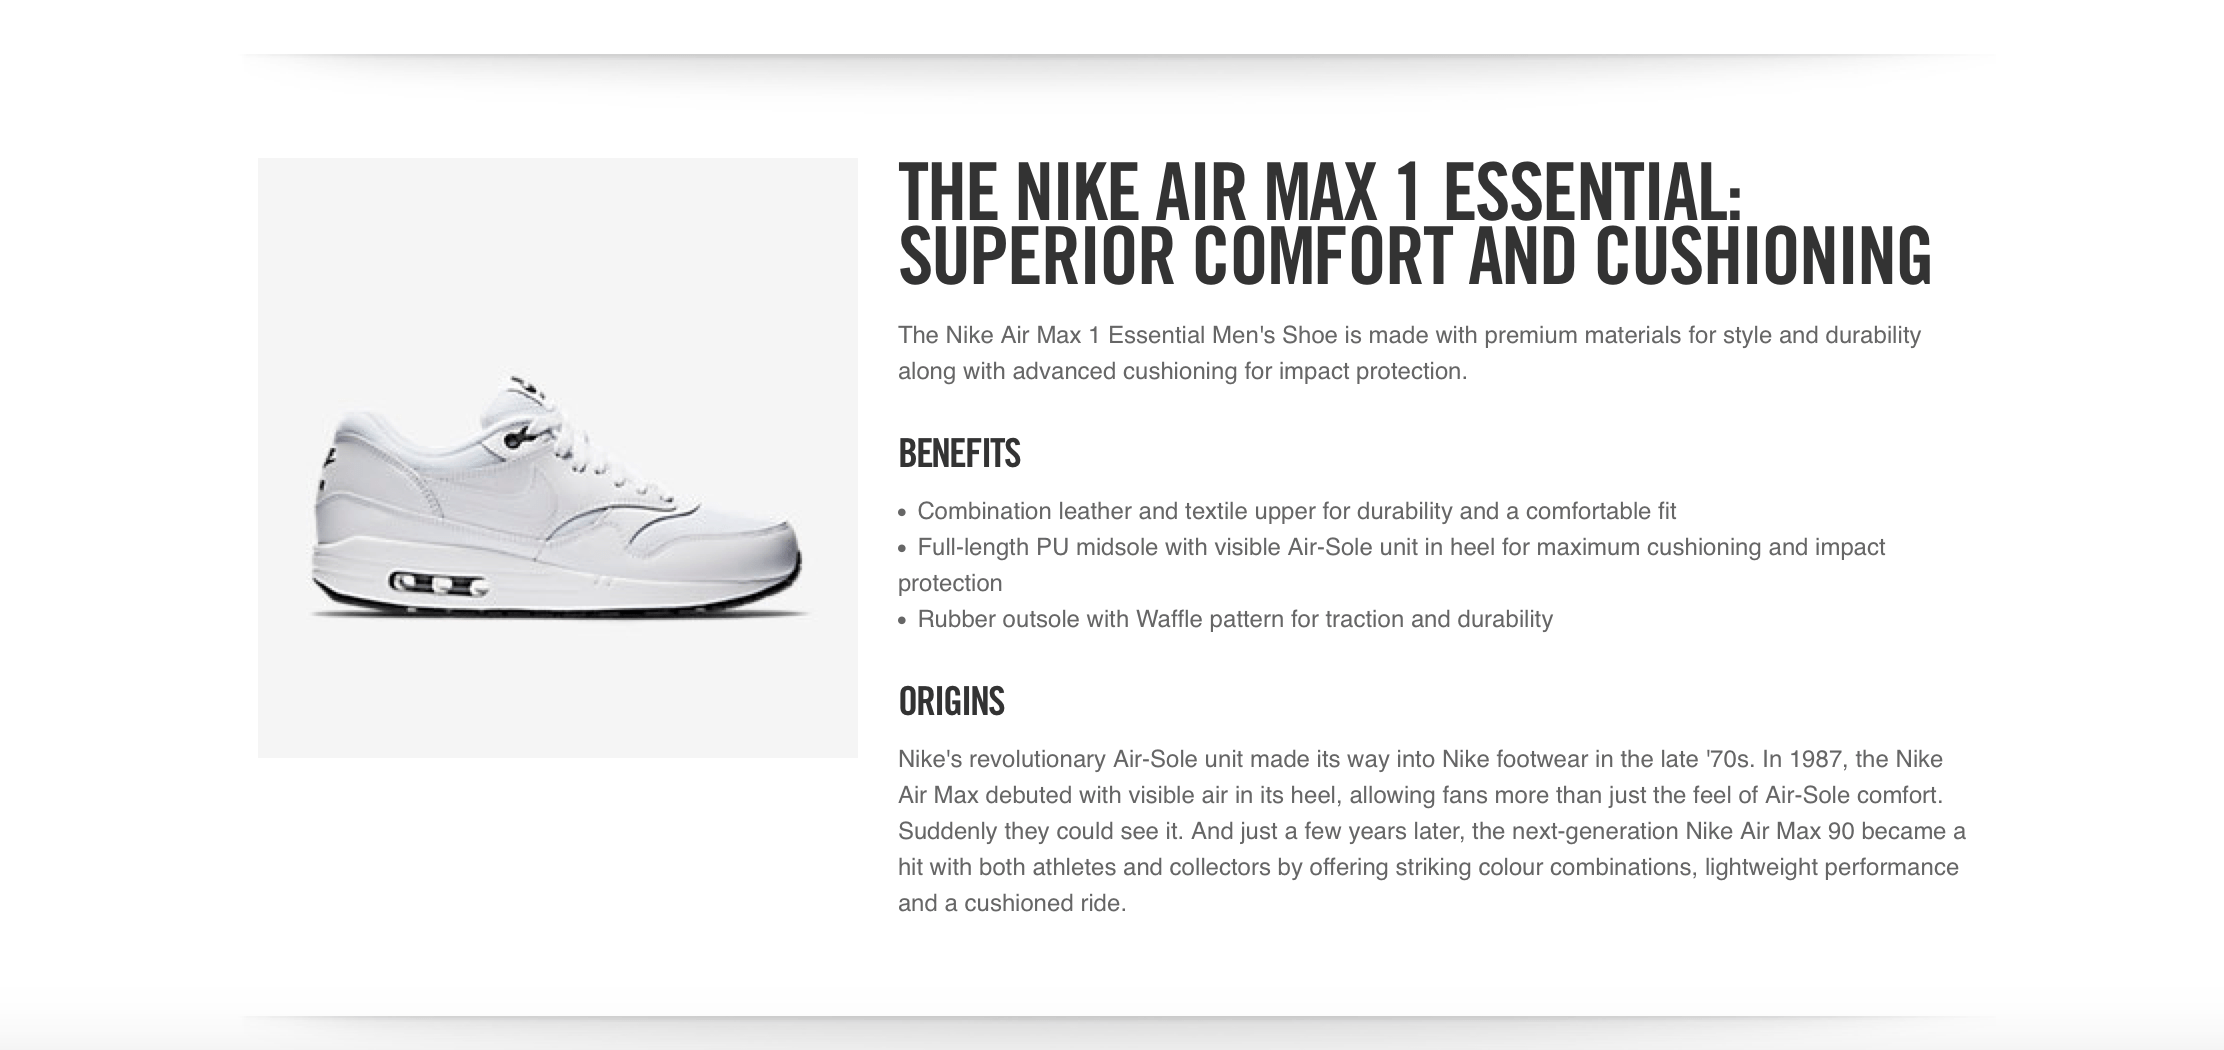 Nike gebruikt zeer specifieke productomschrijvingen in hun verkoopteksten.